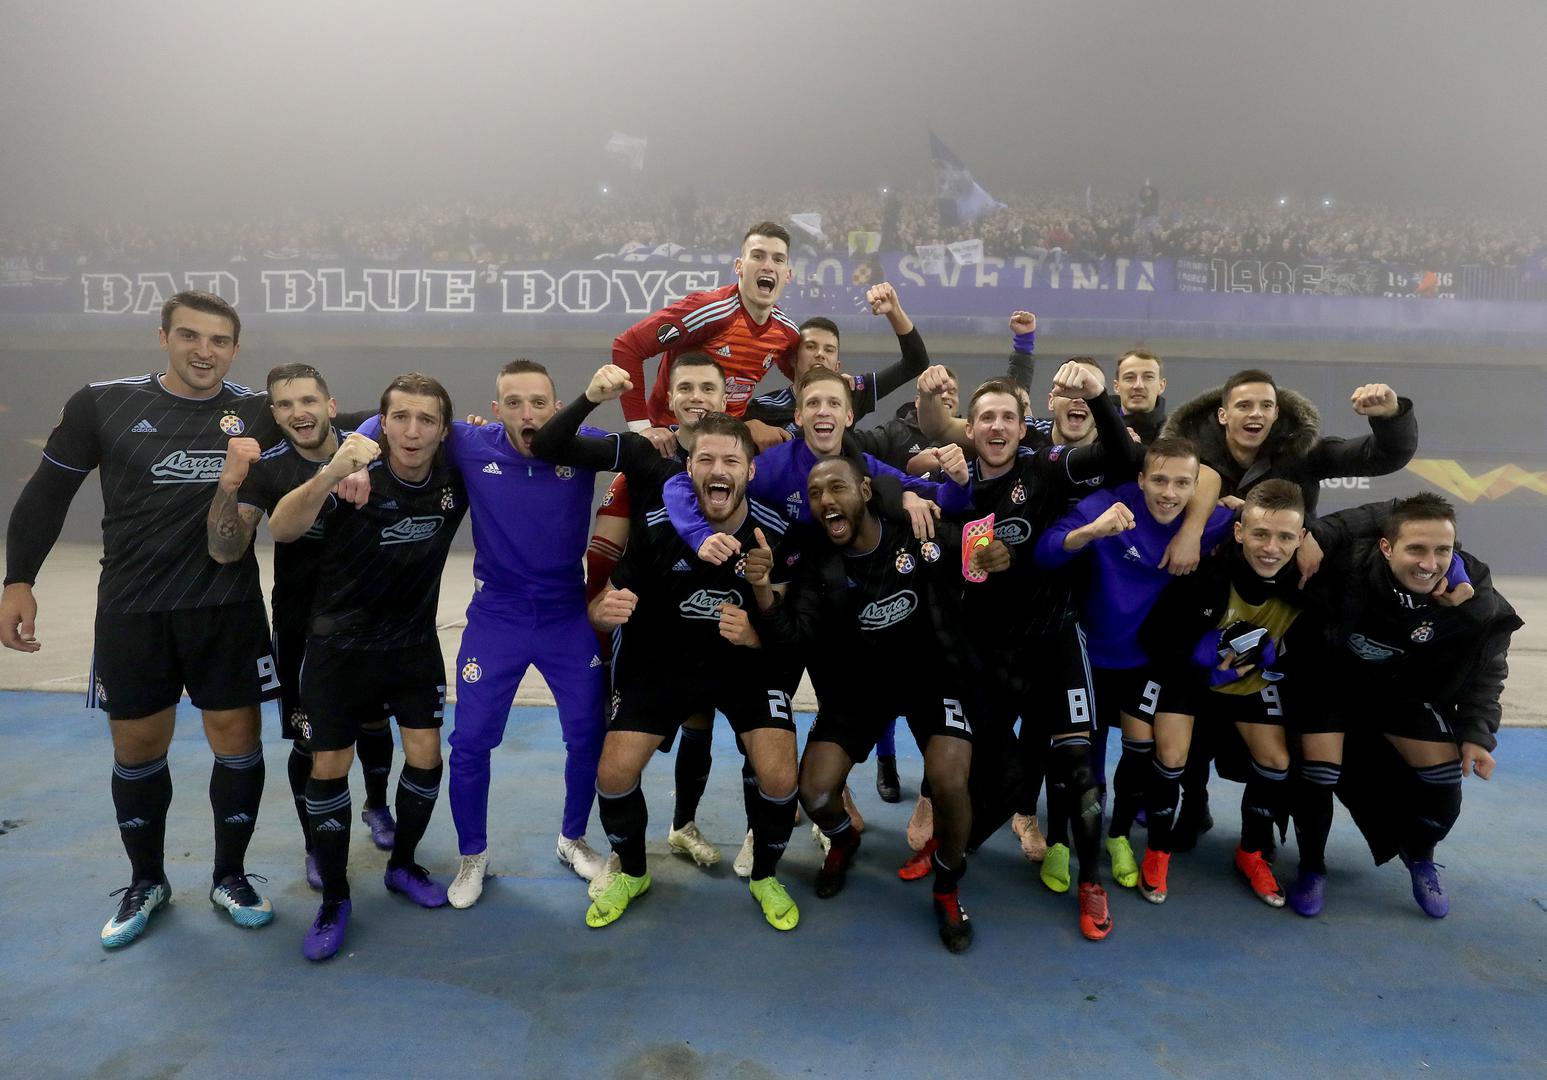 Dinamo je pobijedio Spartak s 3:1 na Maksimiru i osigurao proljeće u Europi.

